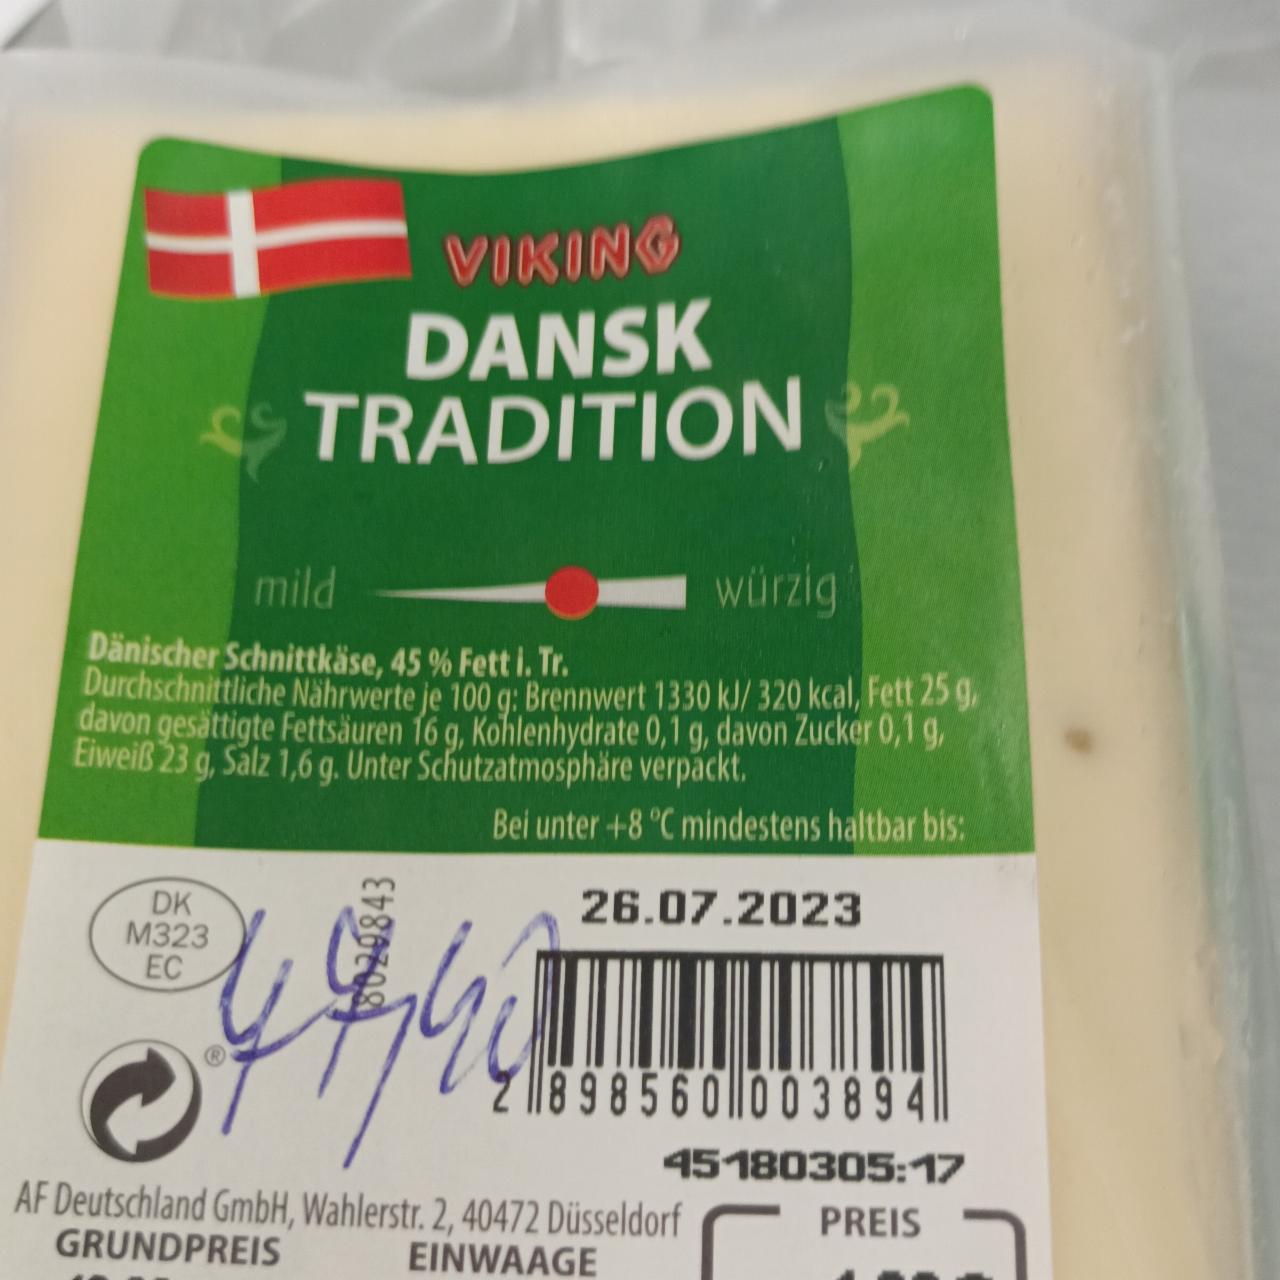 Fotografie - Dansk Tradition Dänischer Schnittkäse, 45 % Fett i. Tr. Viking